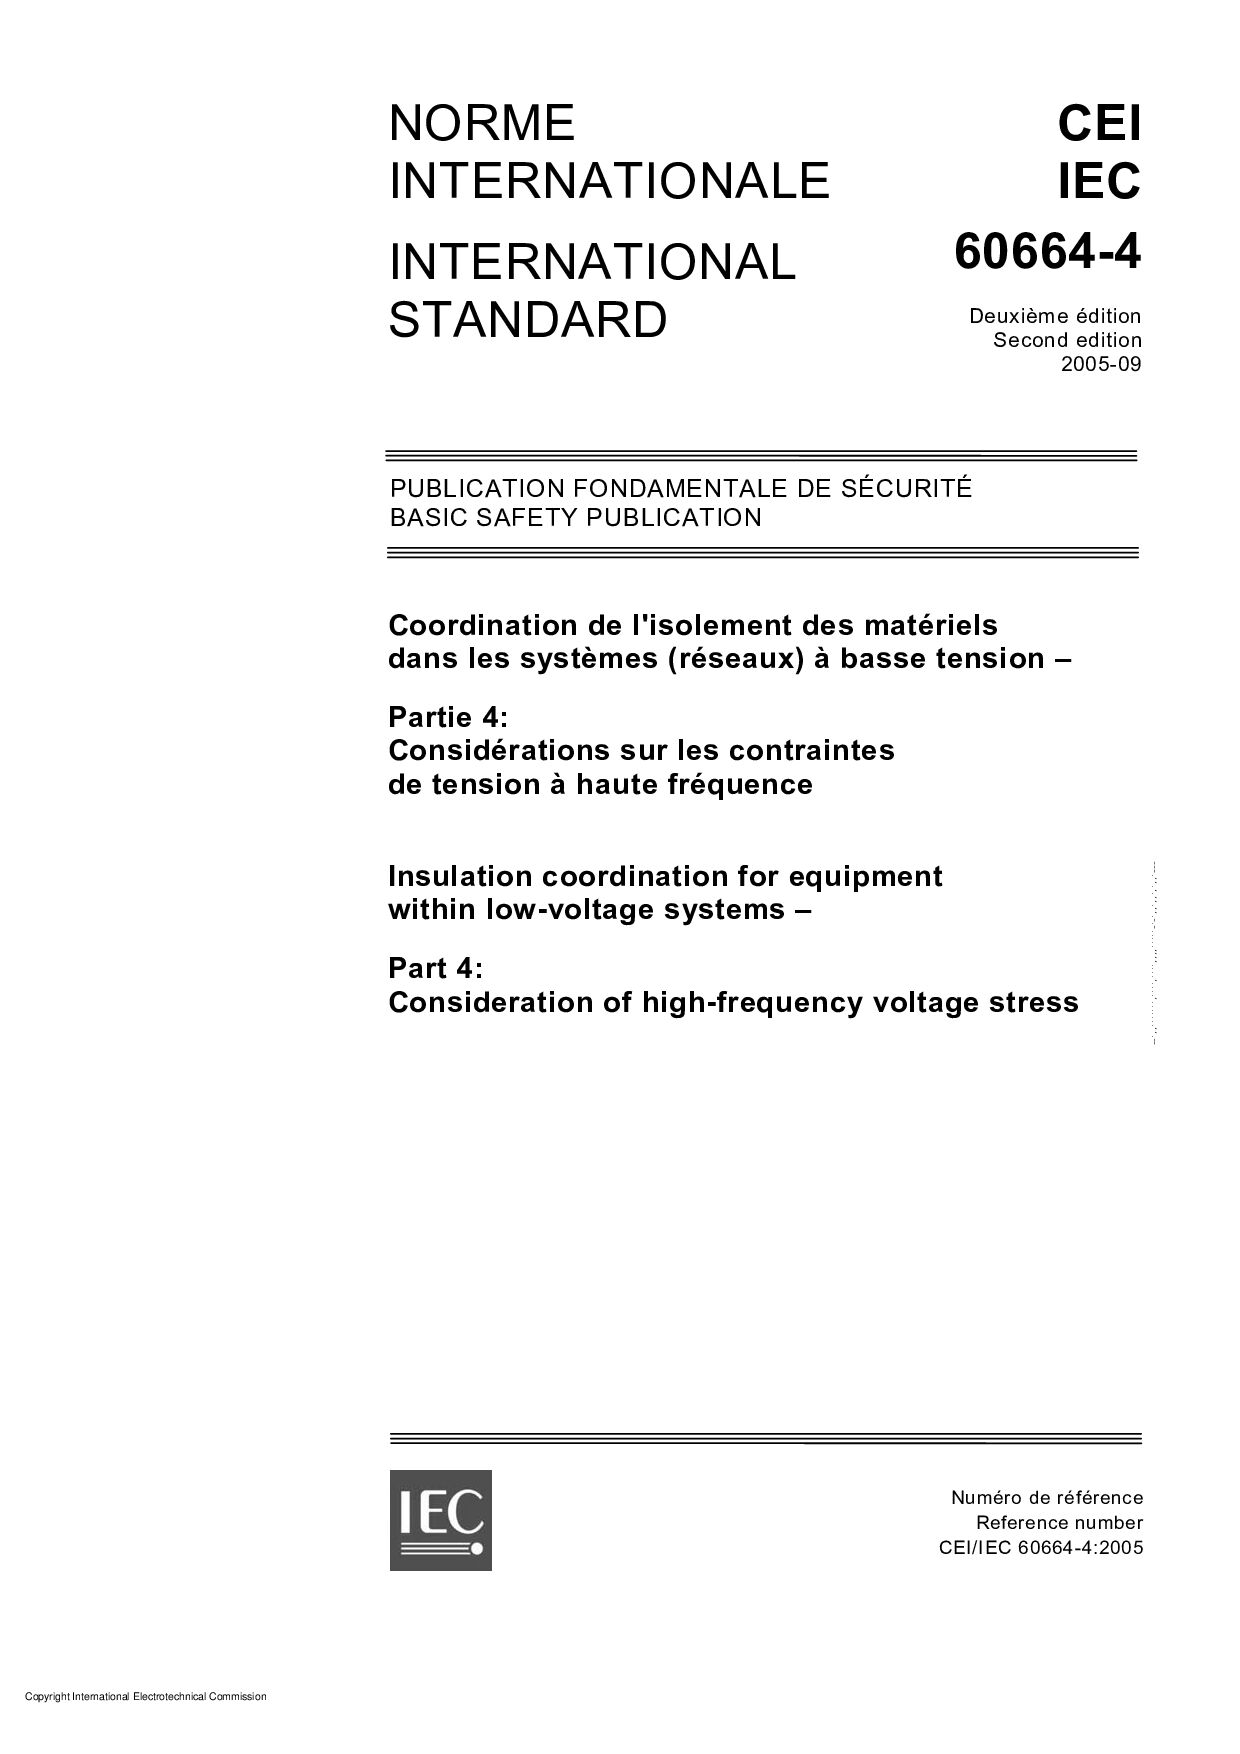 IEC 60664-4:2005